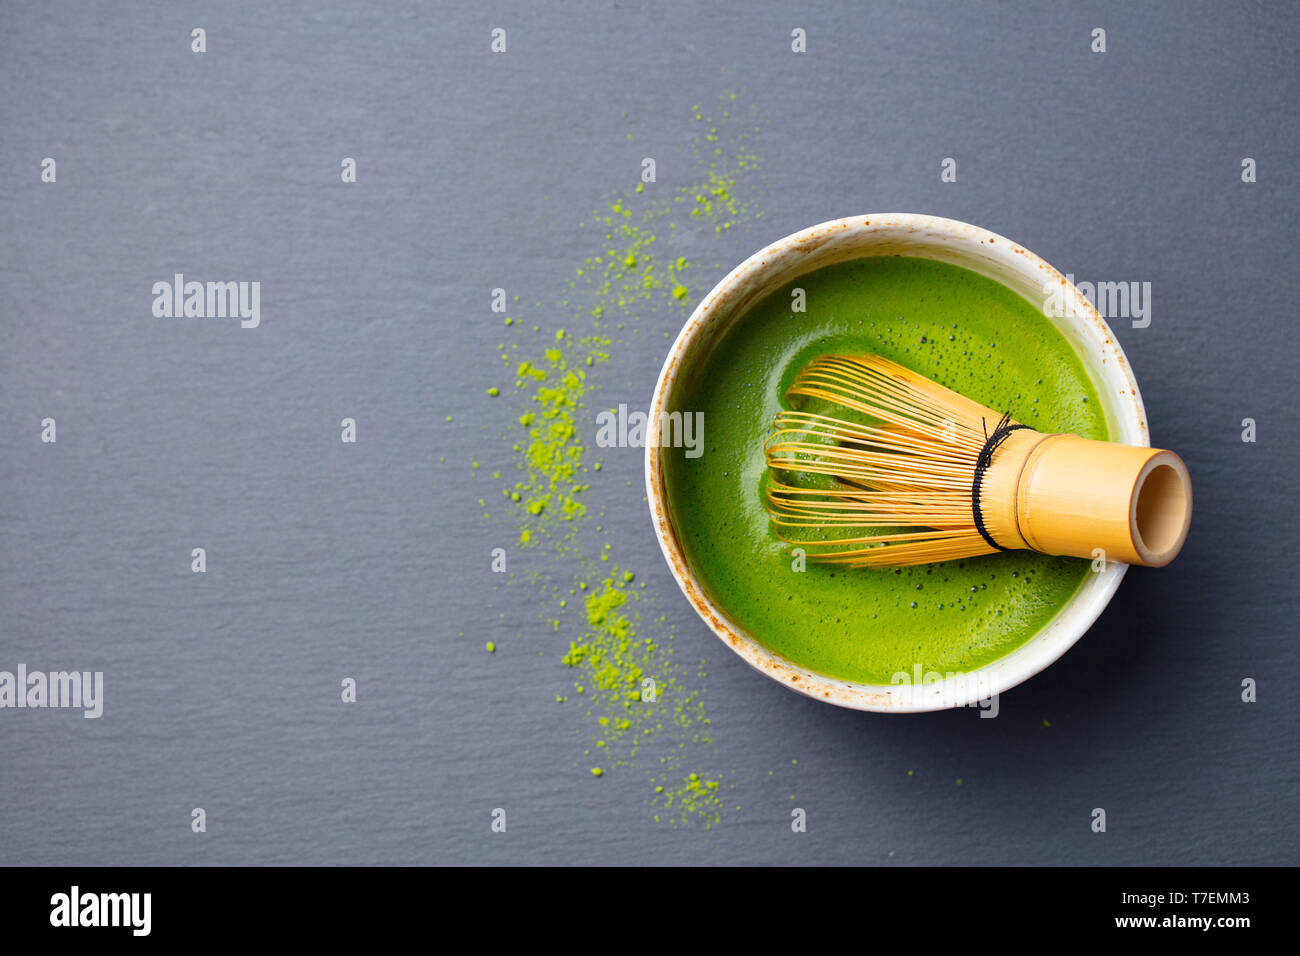 Thé vert matcha processus de cuisson dans un bol avec un fouet en bambou. Arrière-plan en ardoise noire. Vue d'en haut. Copier l'espace. Banque D'Images